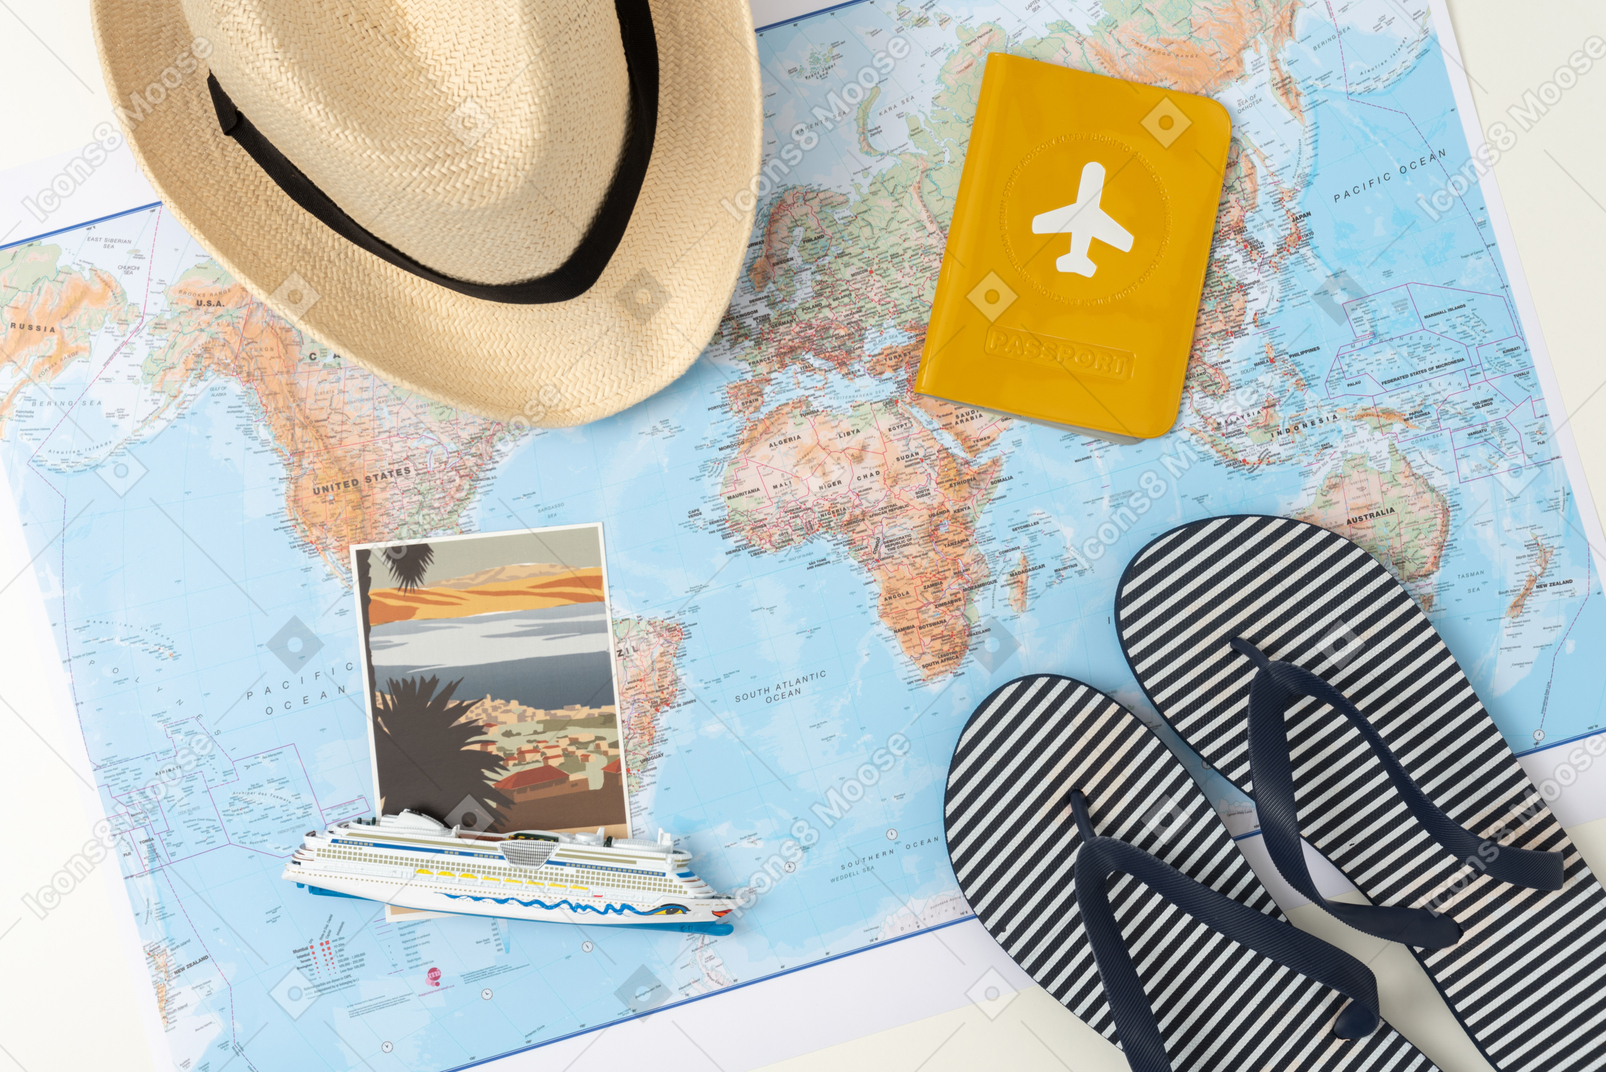 Соломенная шляпа и шлепанцы вместе с паспортом и фотографией, лежащей на карте мира